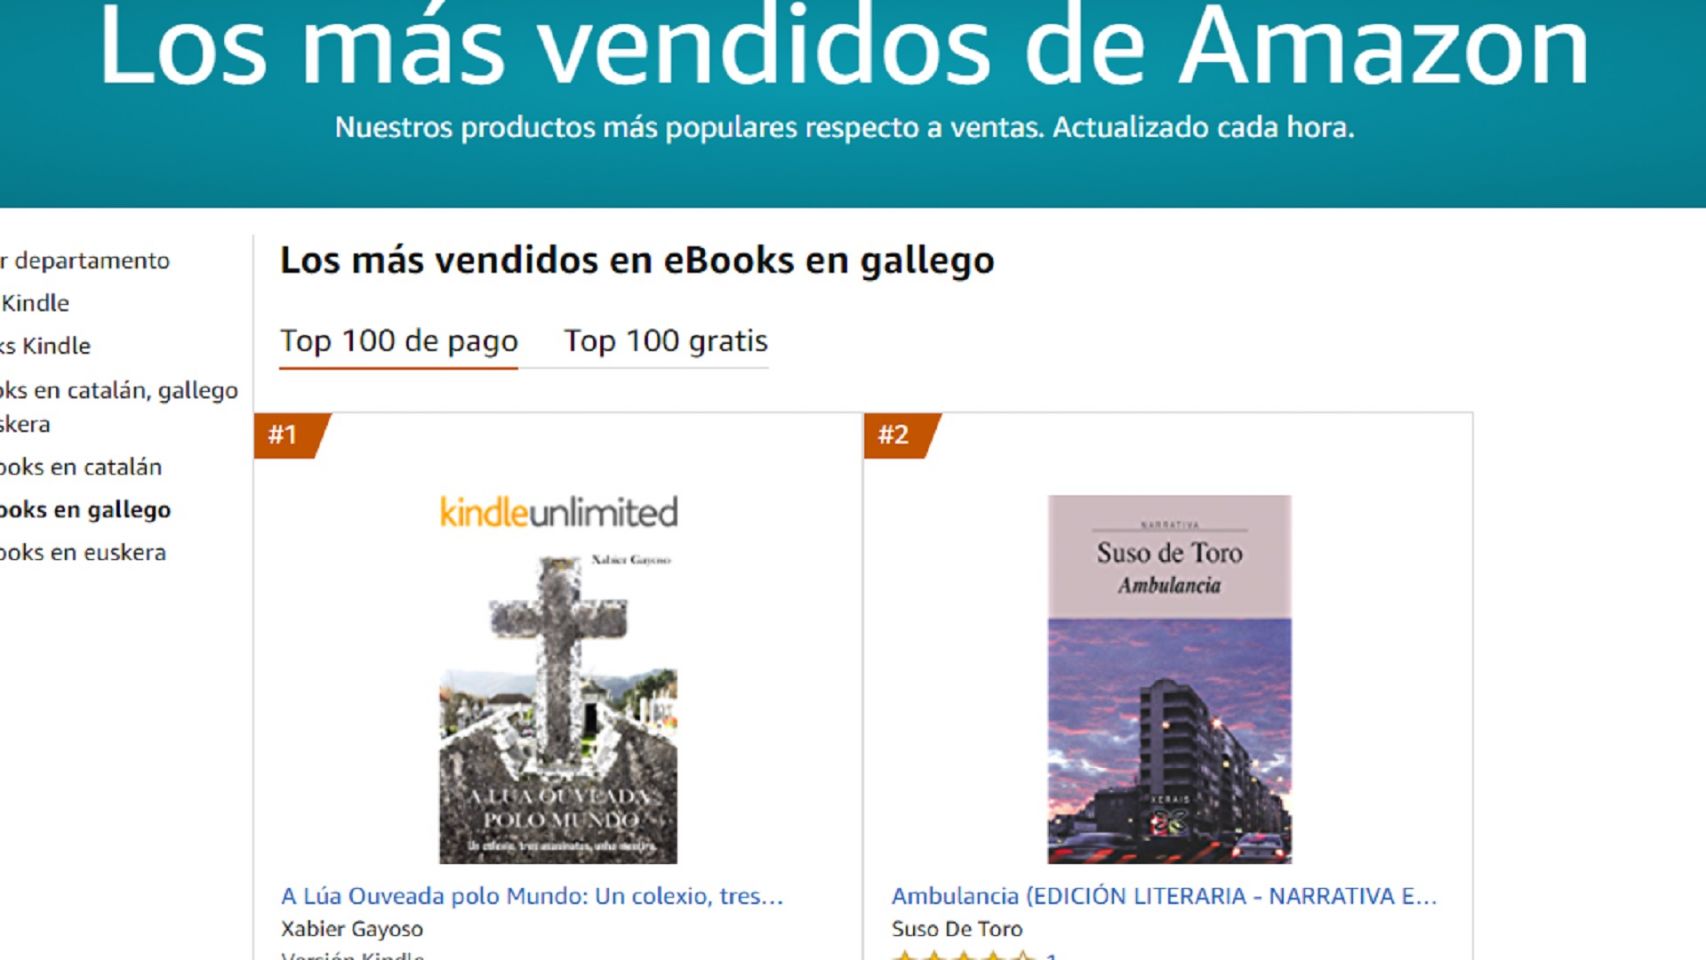 'A lúa ouveada polo mundo', número uno en ventas de e-book en gallego.